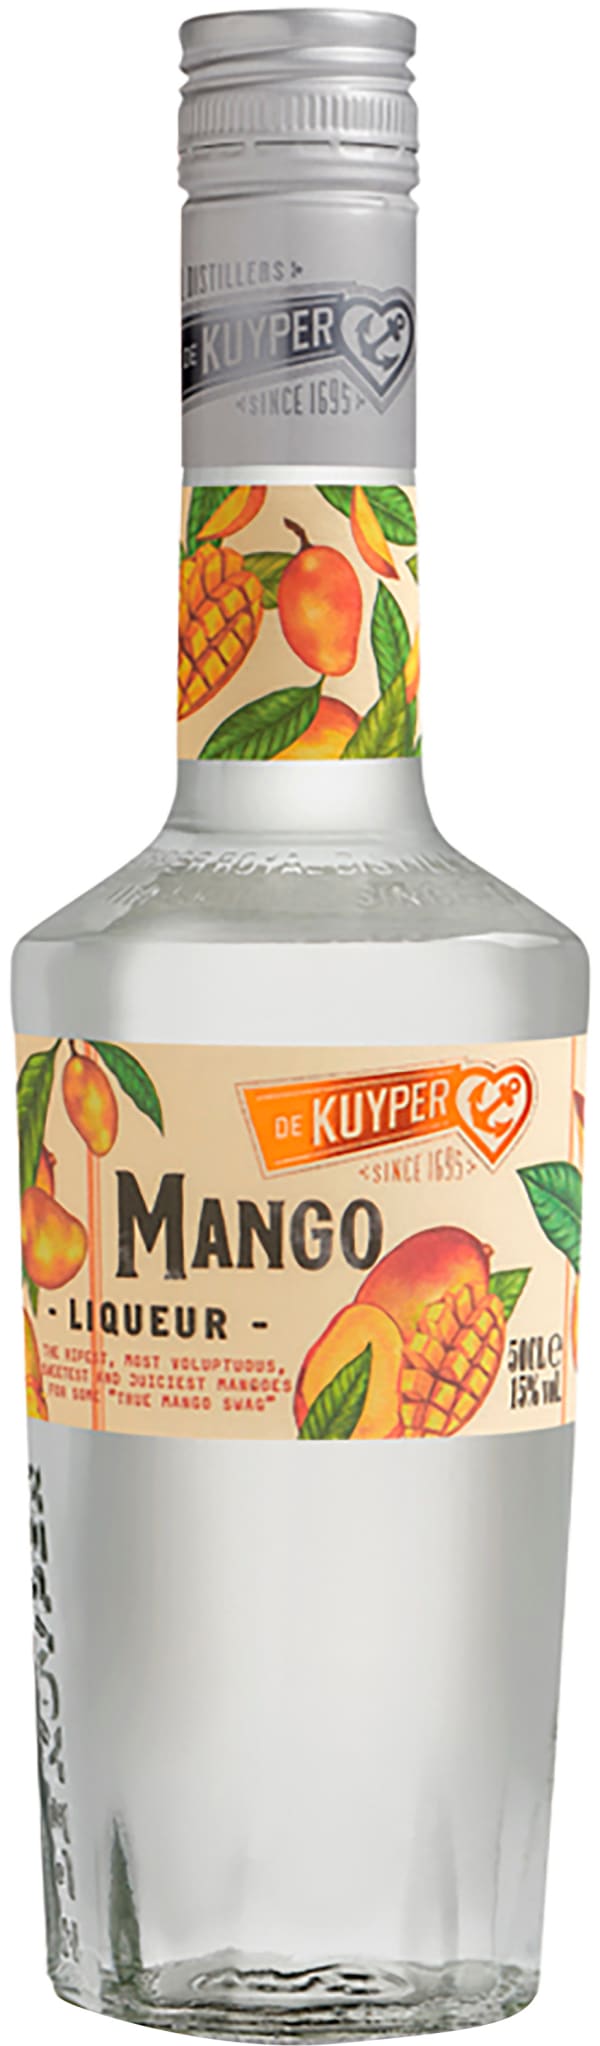 De Kuyper Mango | Alko